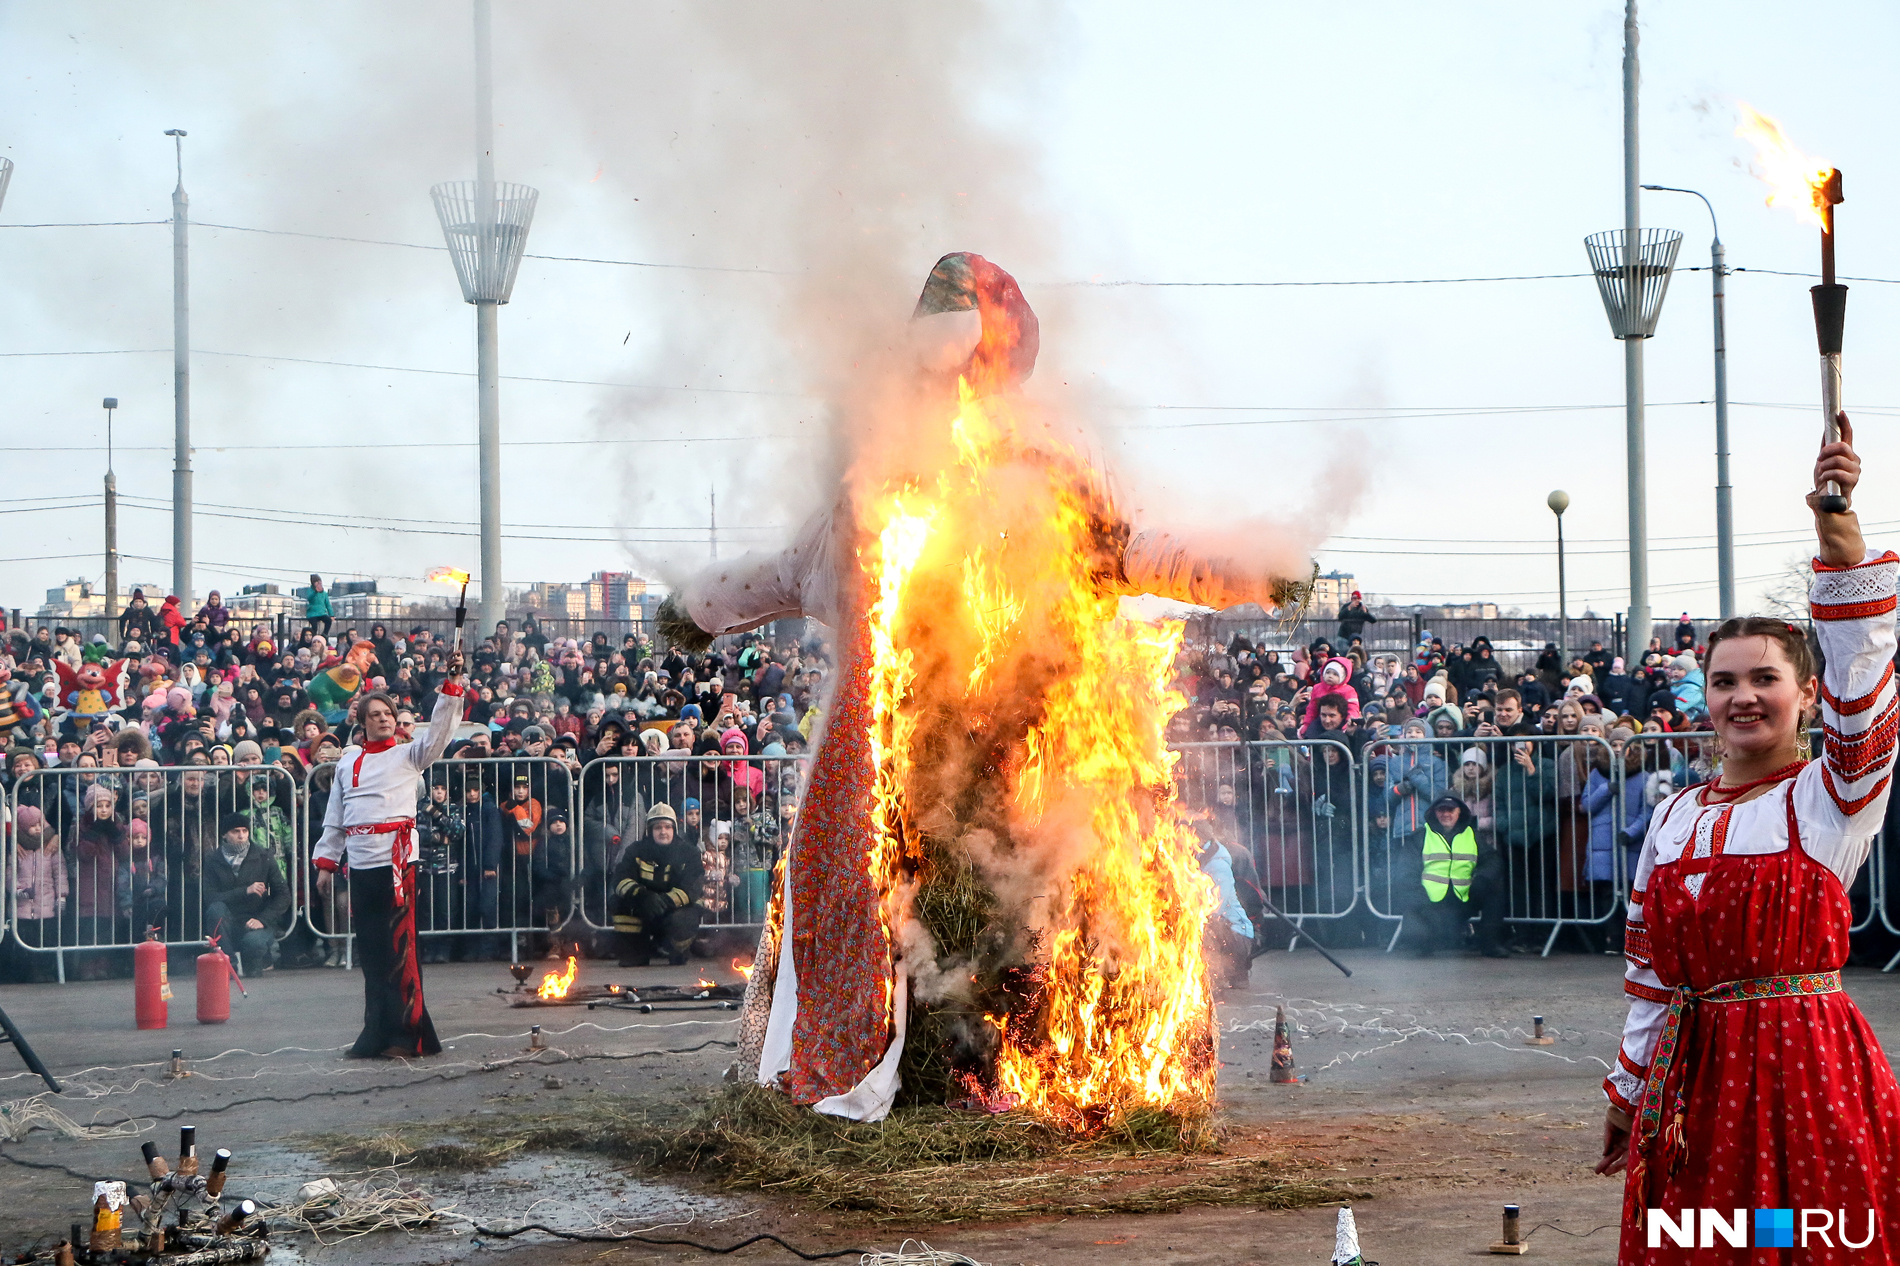 Огненное шоу с сожжением чучела стало кульминацией праздника